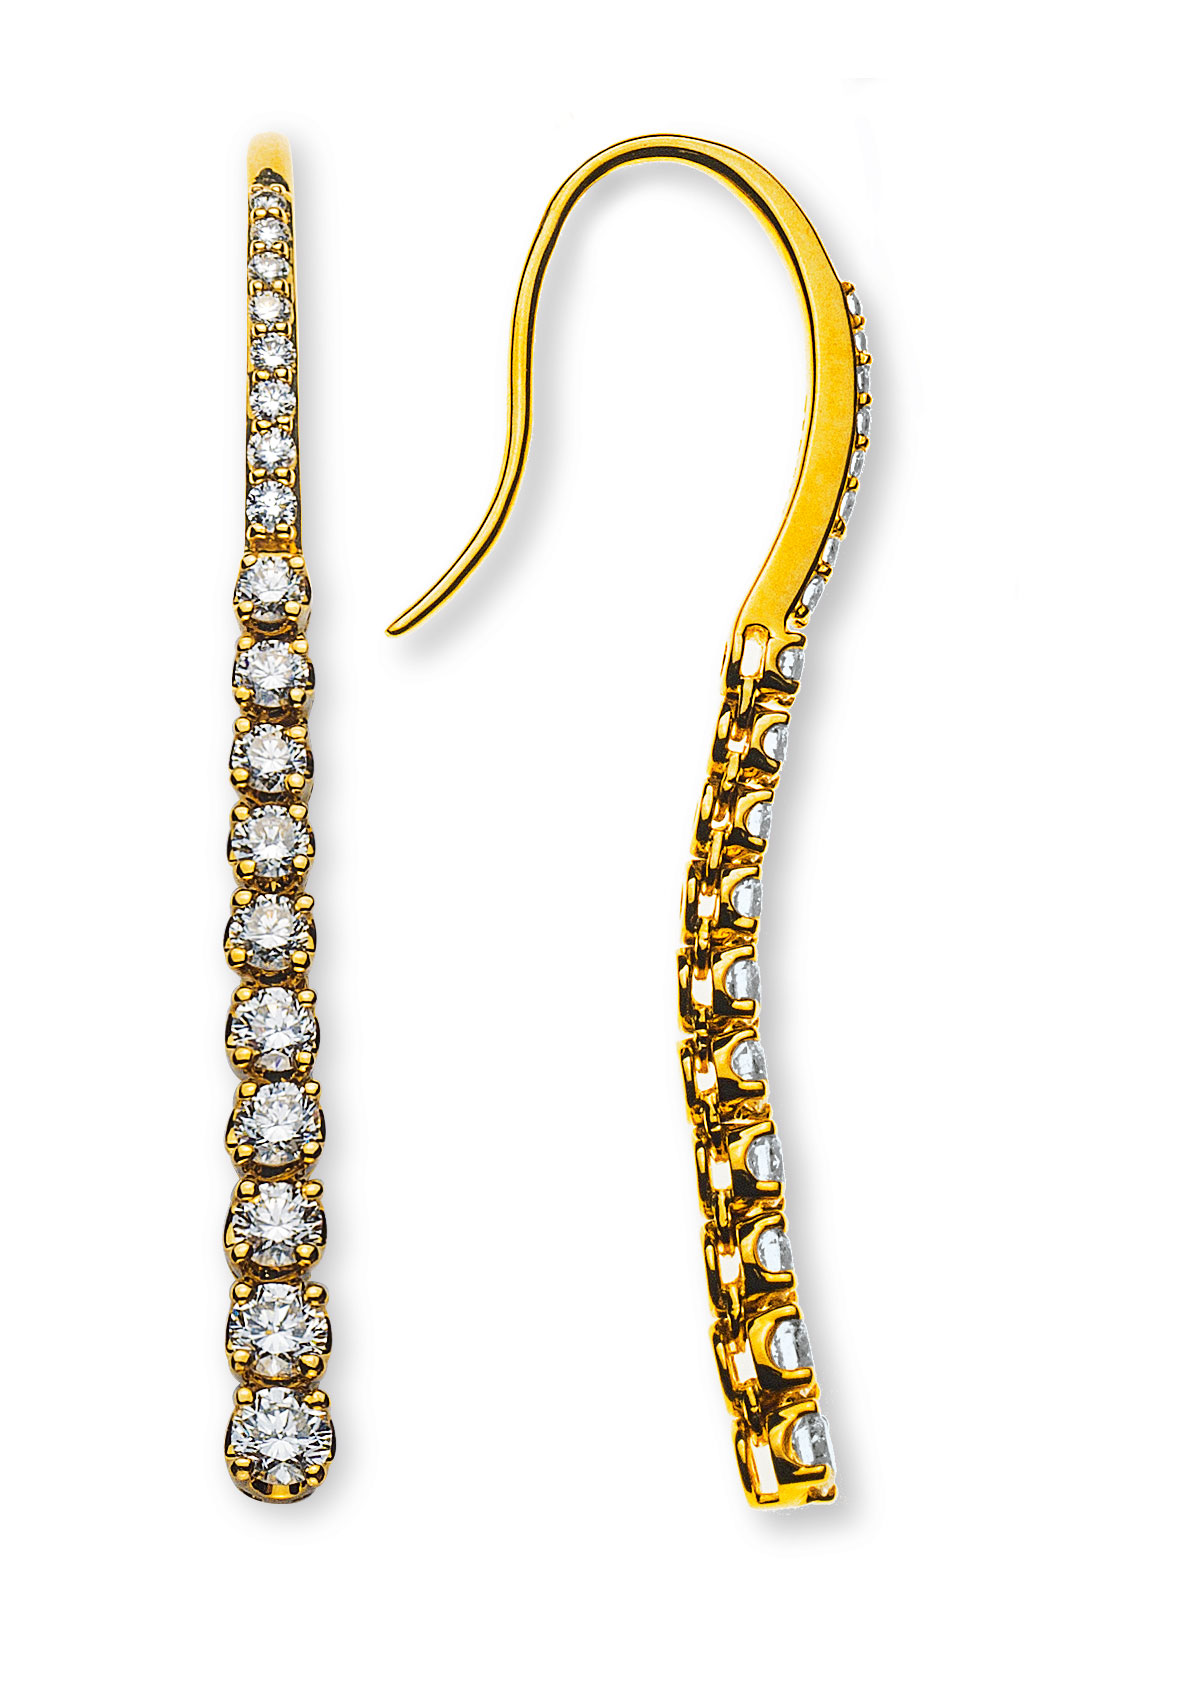 AURONOS Prestige Diamantohrhänger 18K Gelbgold 1.17ct.